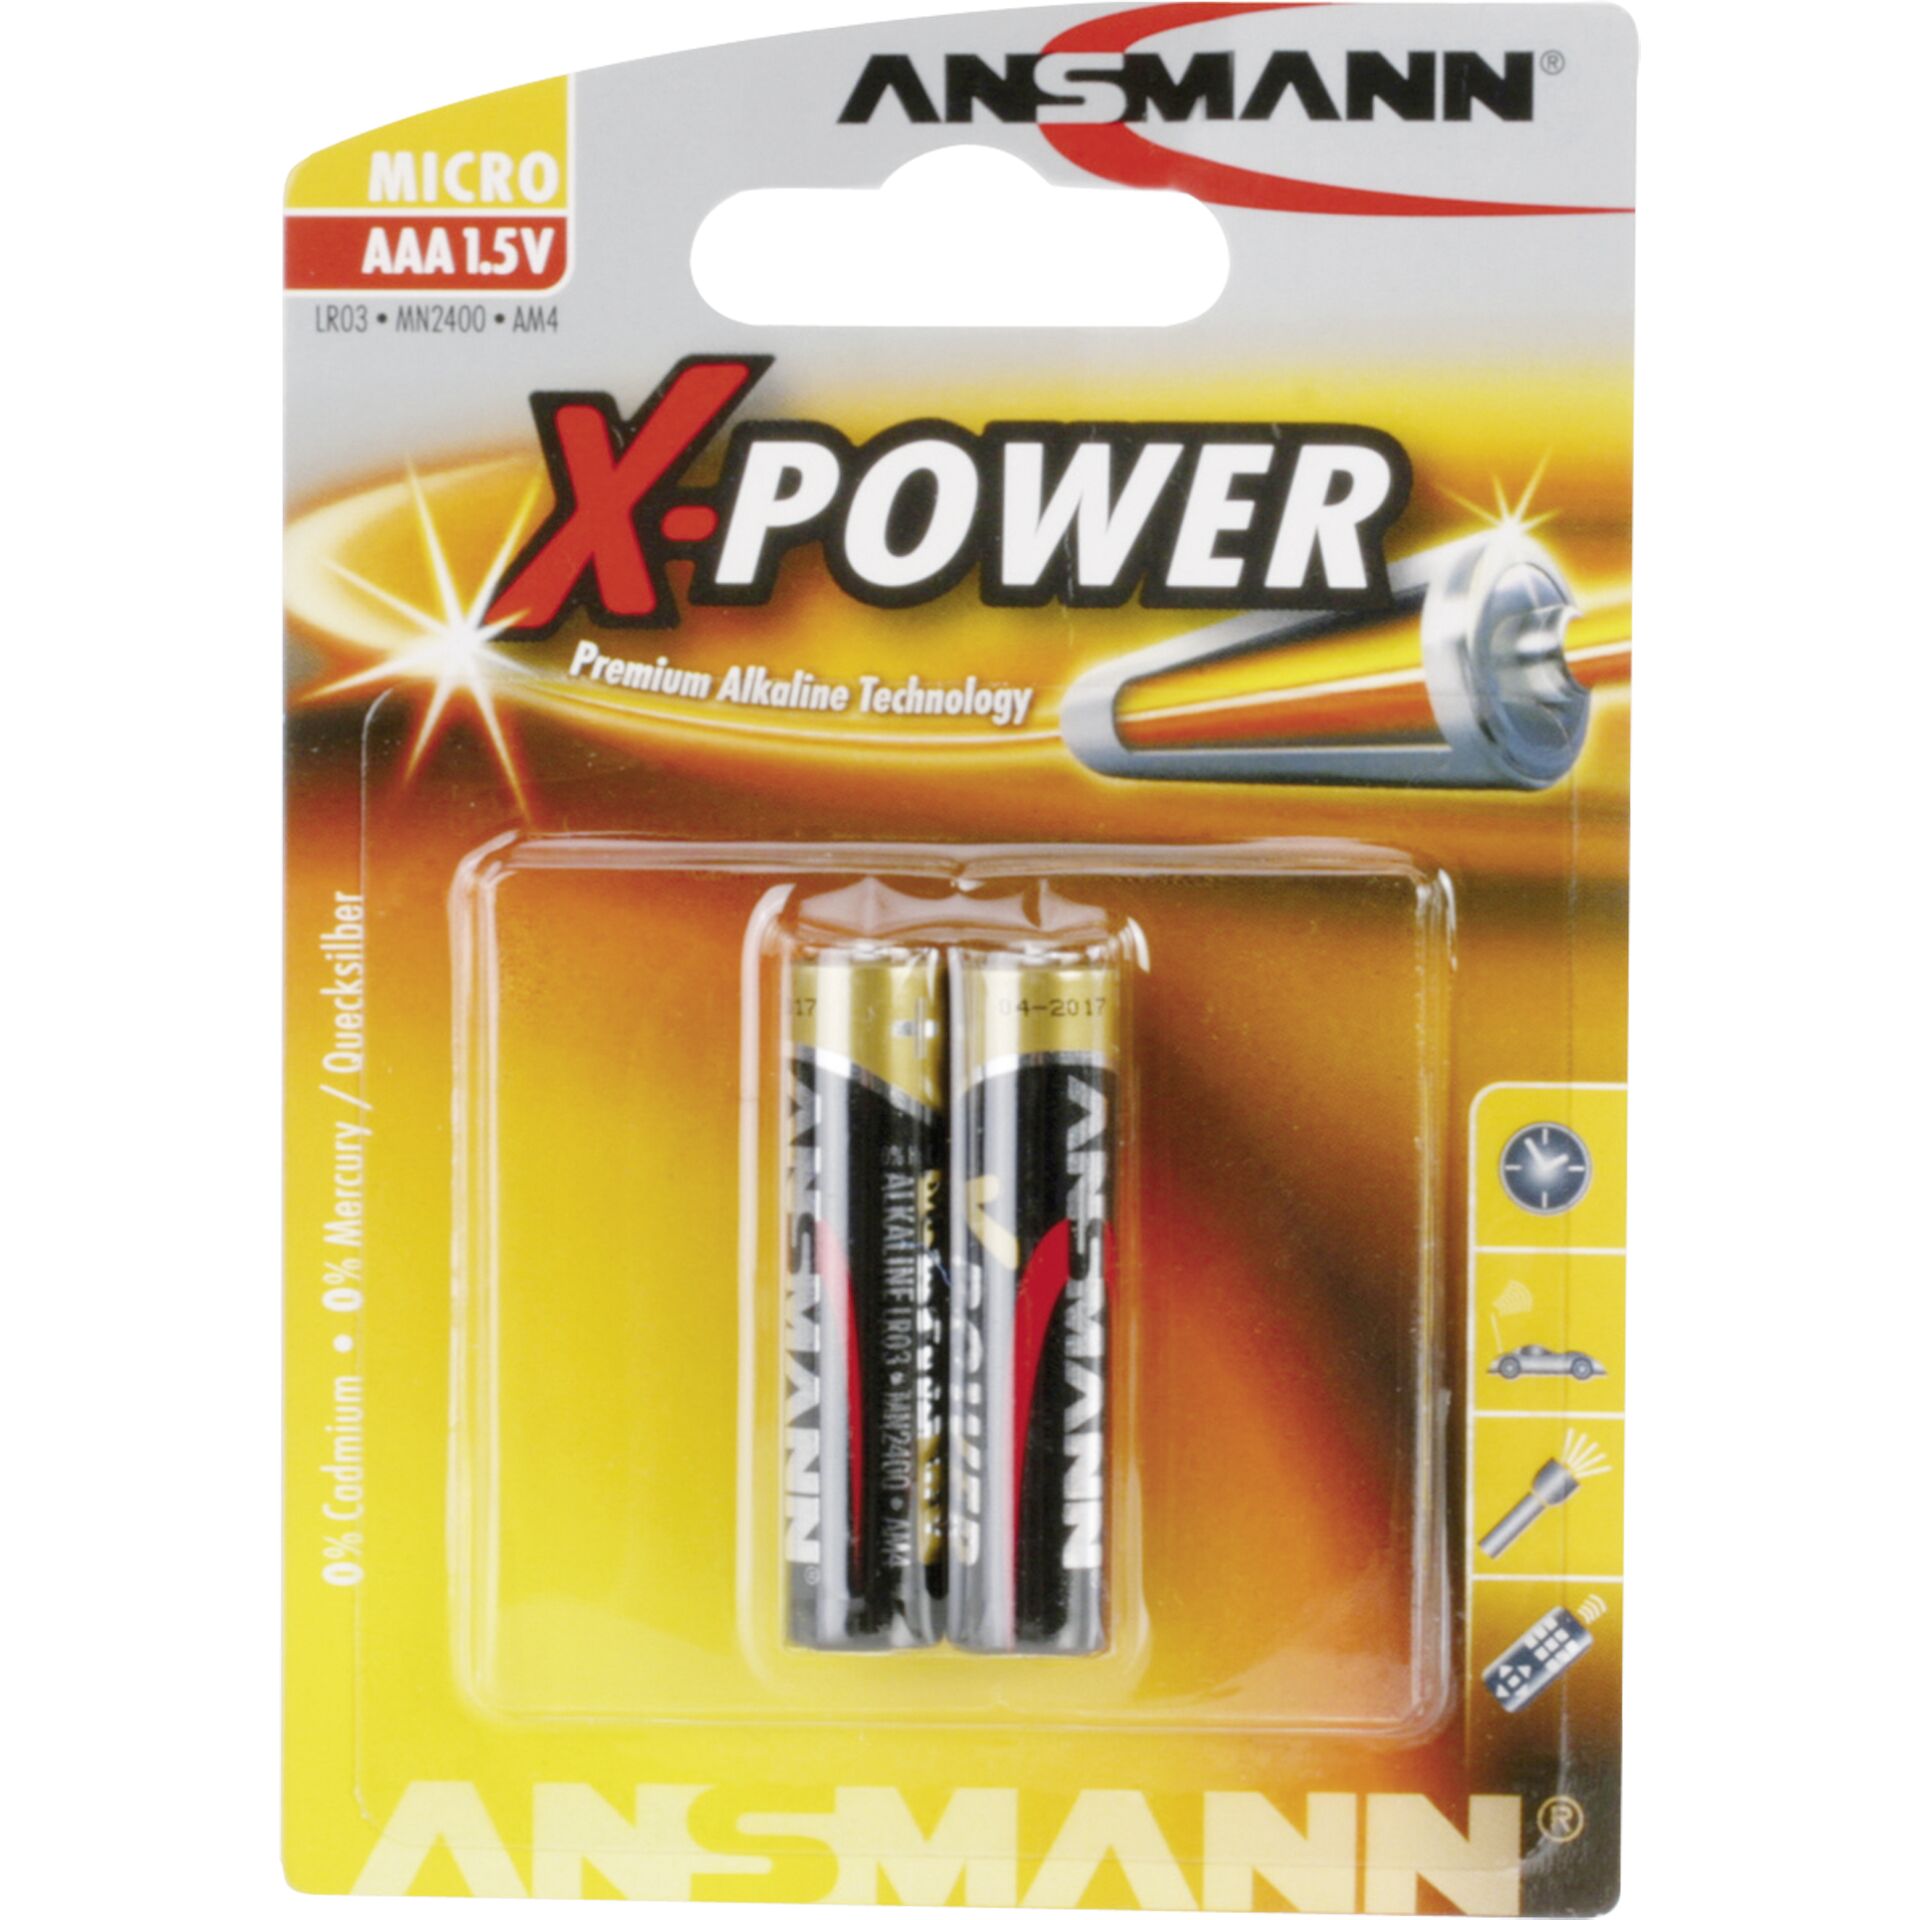 Ansmann Alkalinebatterie Micro AAA X Power 2 Stück günstig bei